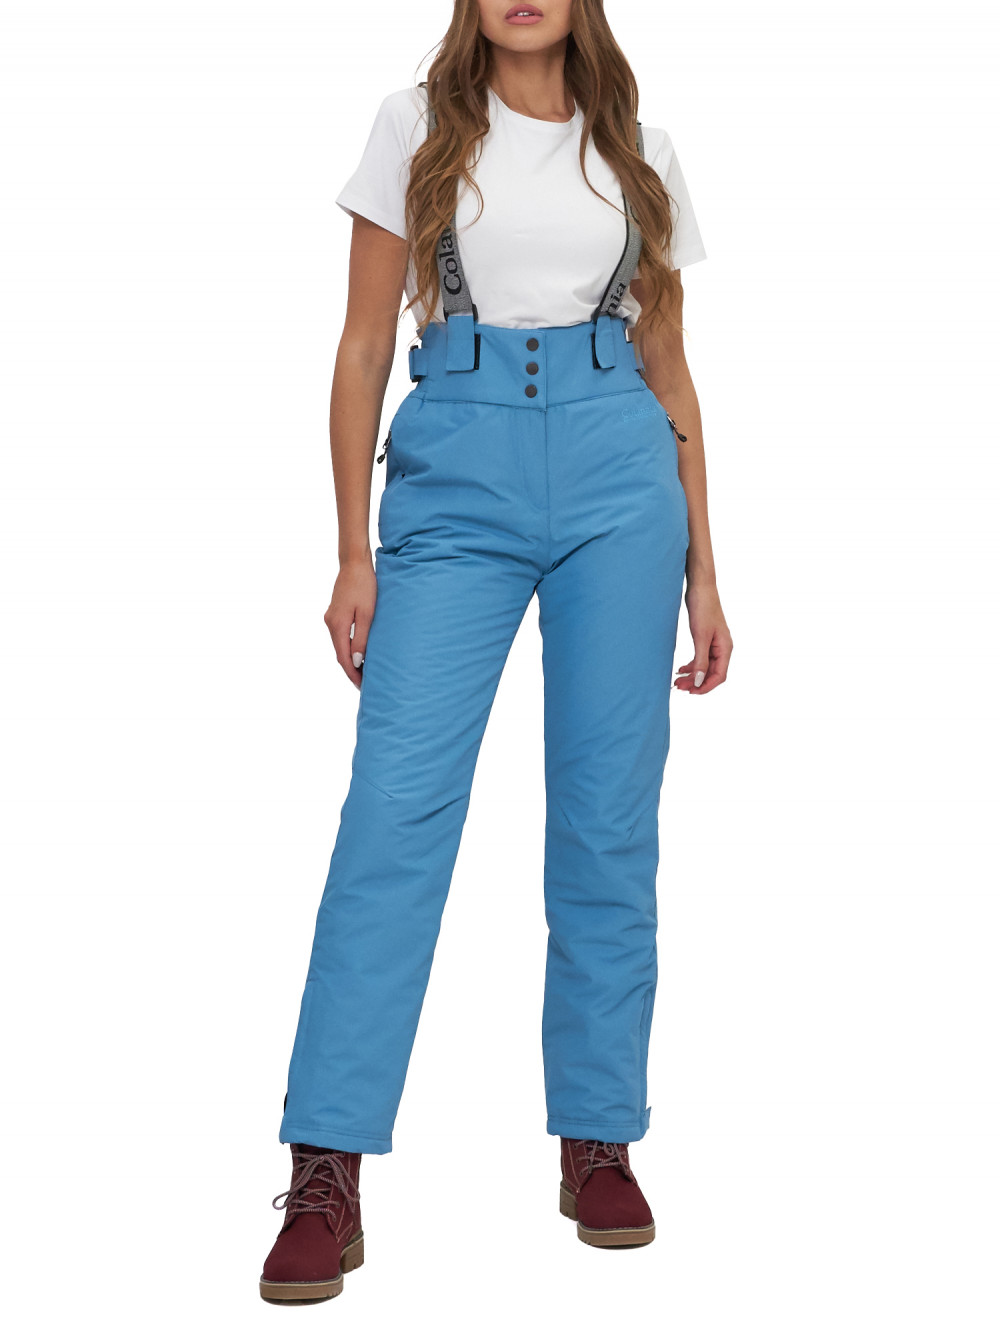 Полукомбинезон брюки горнолыжные женские AD66215Gl голубого цвета, 50